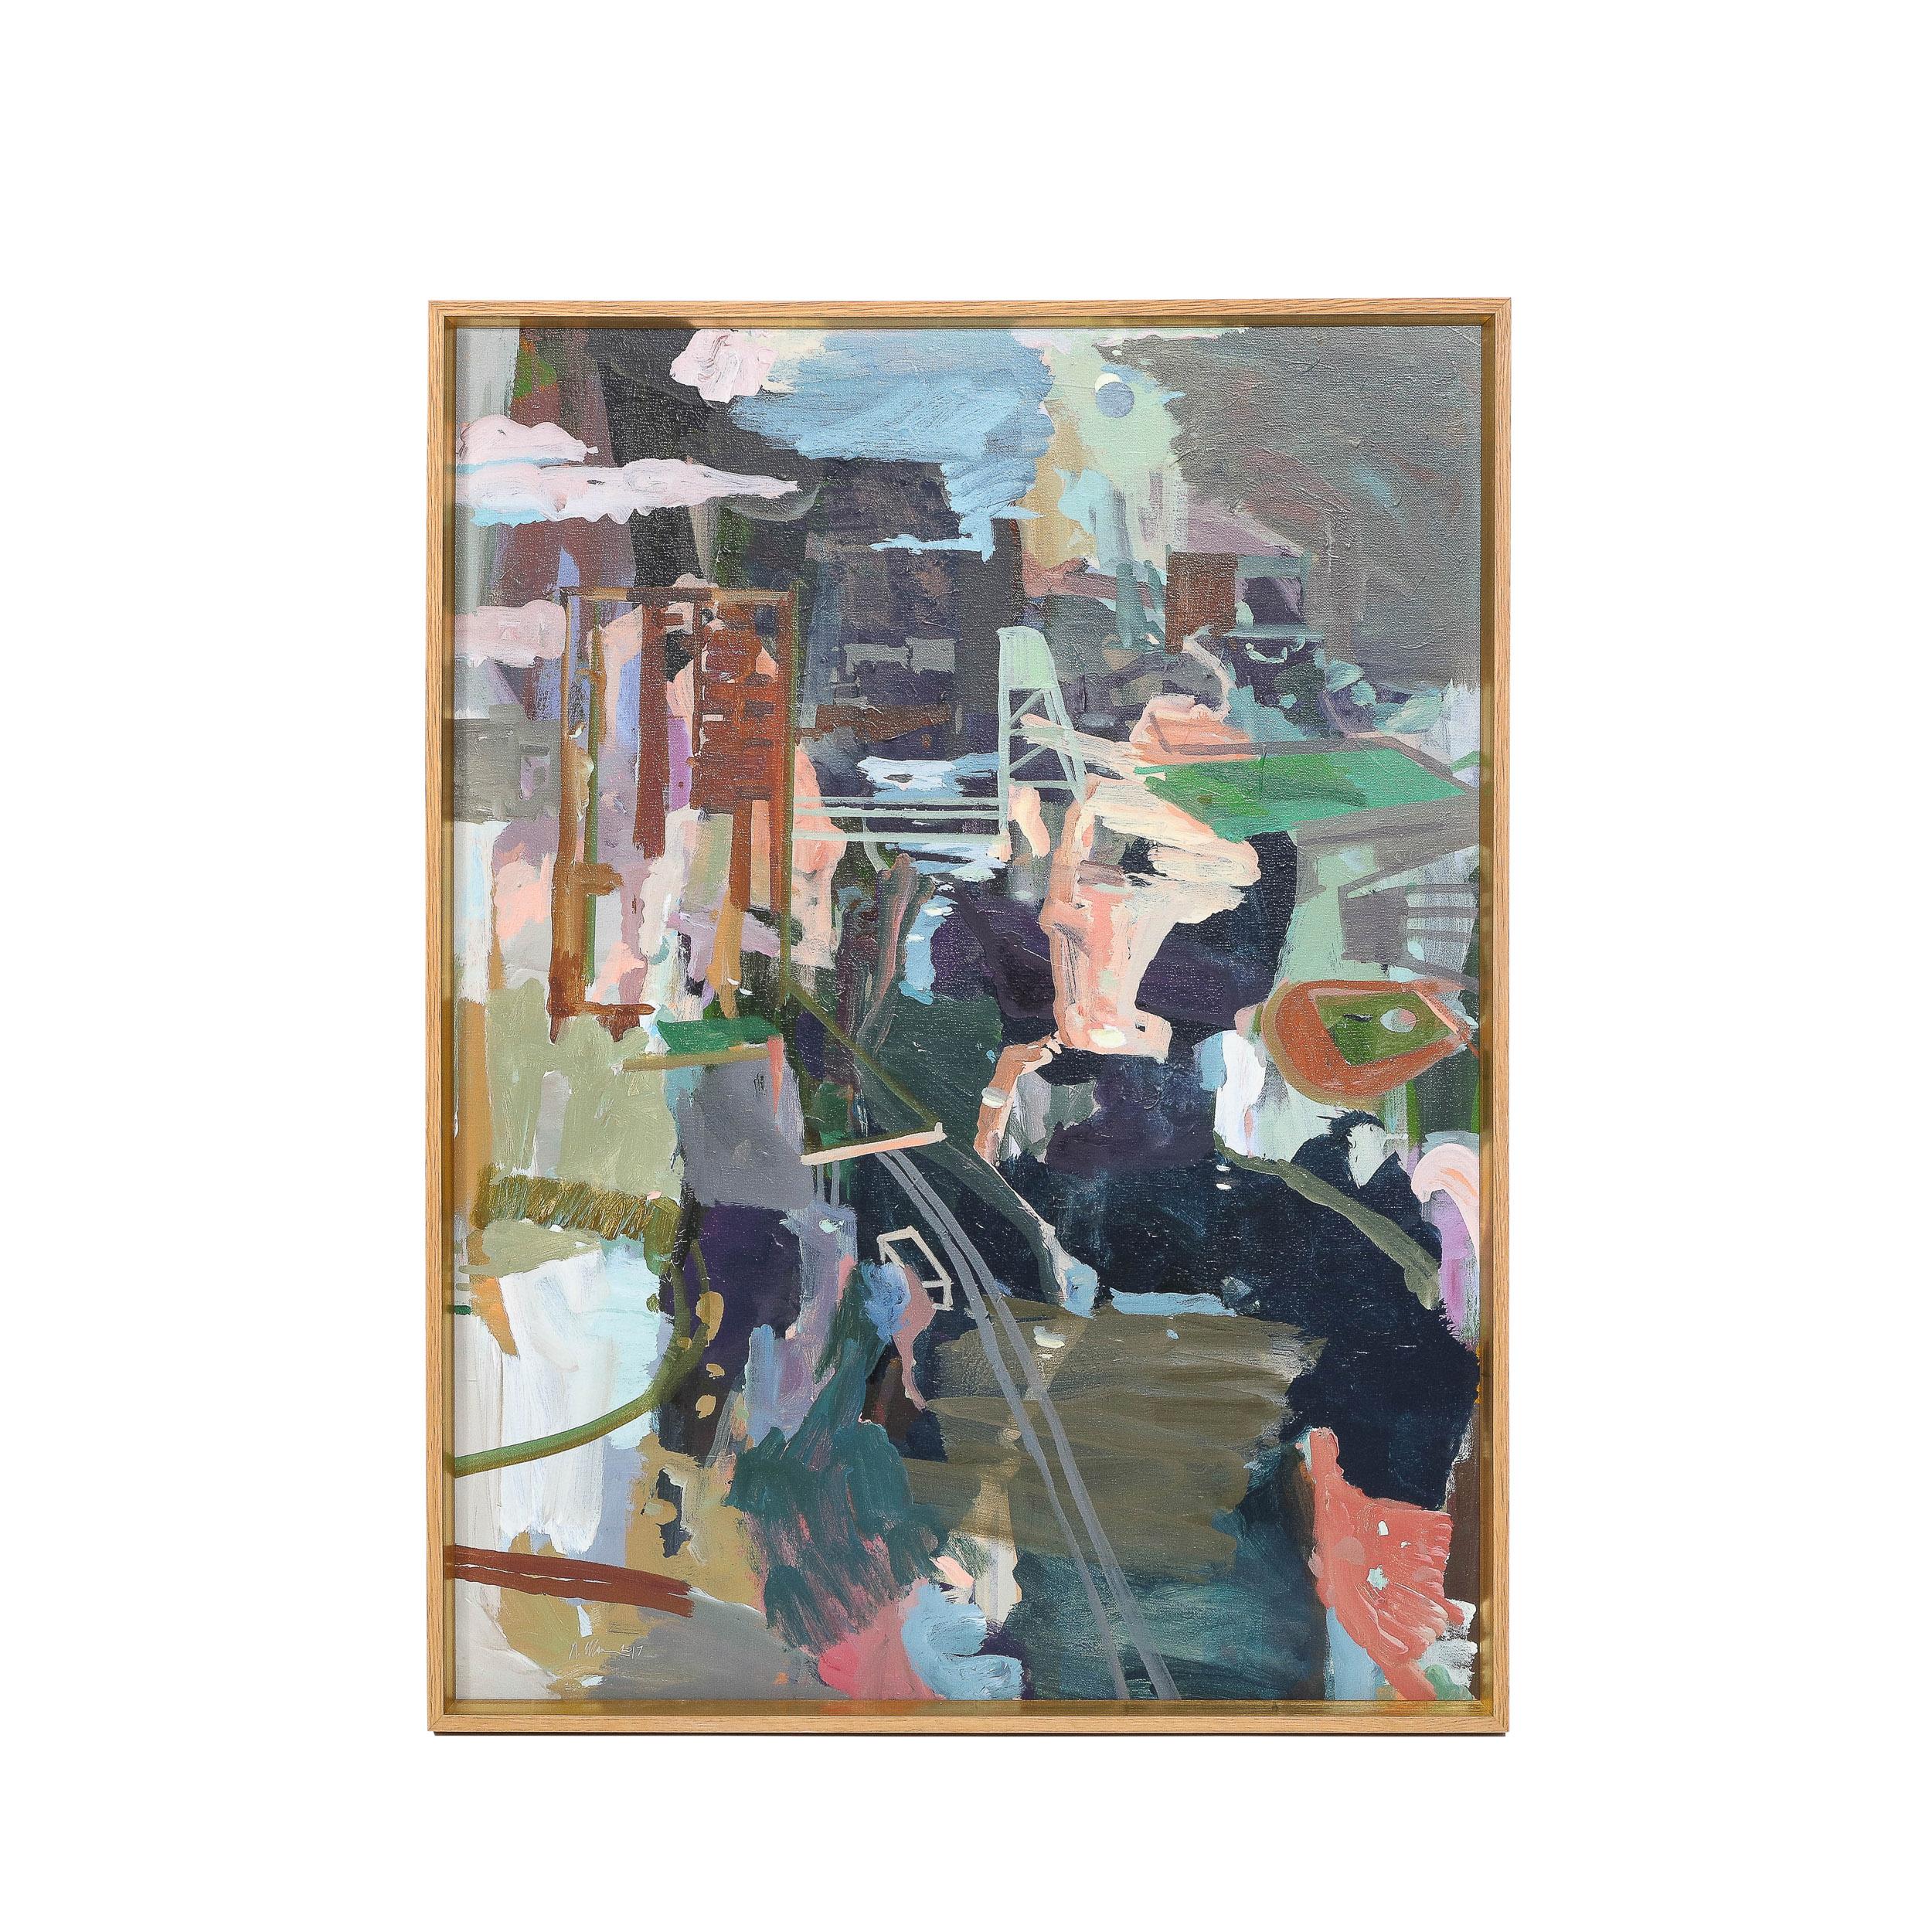 Dieses elegante und überzeugende modernistische Farbfeldgemälde wurde von der geschätzten zeitgenössischen Künstlerin Rebecca Allan um 2017 in den Vereinigten Staaten realisiert. Das expressionistische Werk "Harlem River Eclipse" ist voller Dynamik